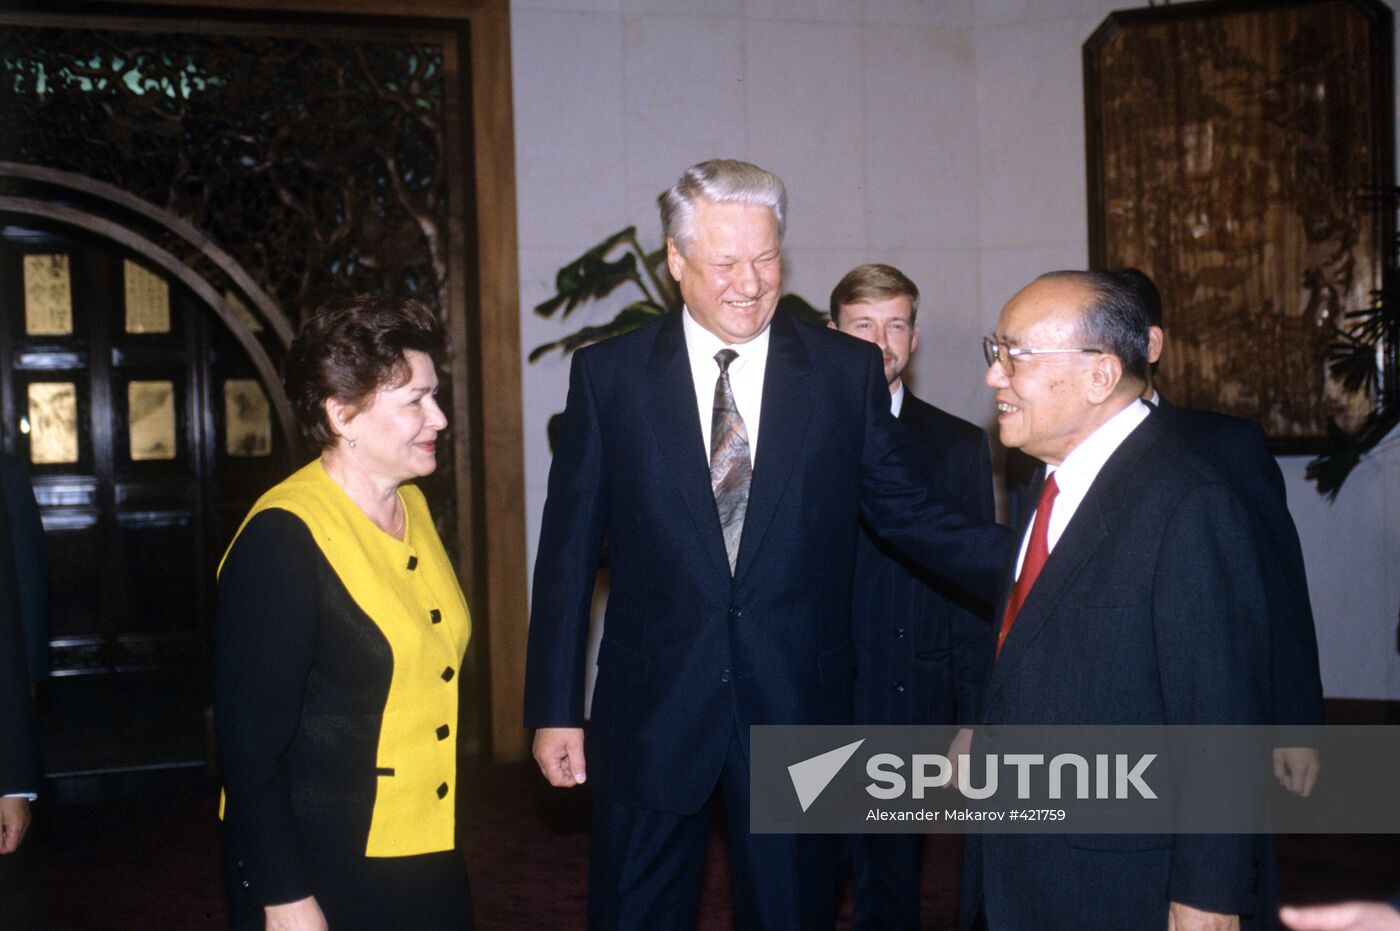 Yang Shangkun, Boris Yeltsin and Naina Yeltsina